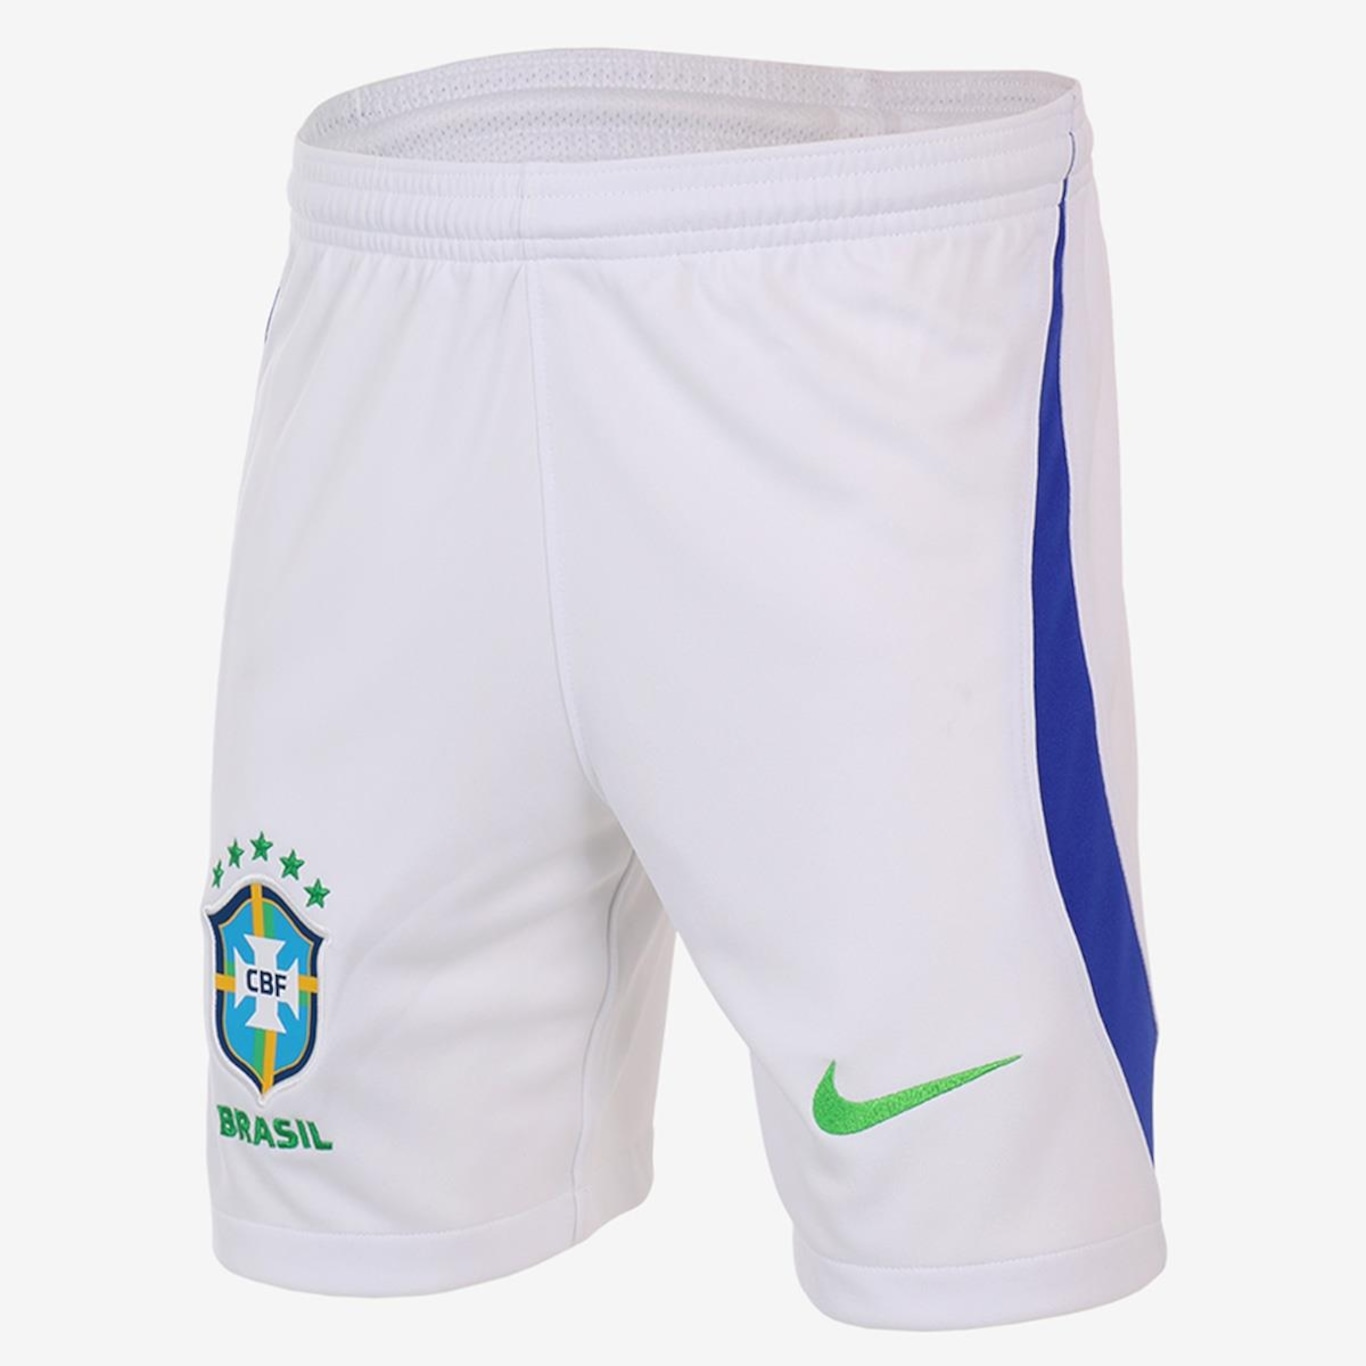 Camisa Nike Brasil I 22/23 Torcedor Pro Infantil DN1204-740 - Ativa Esportes